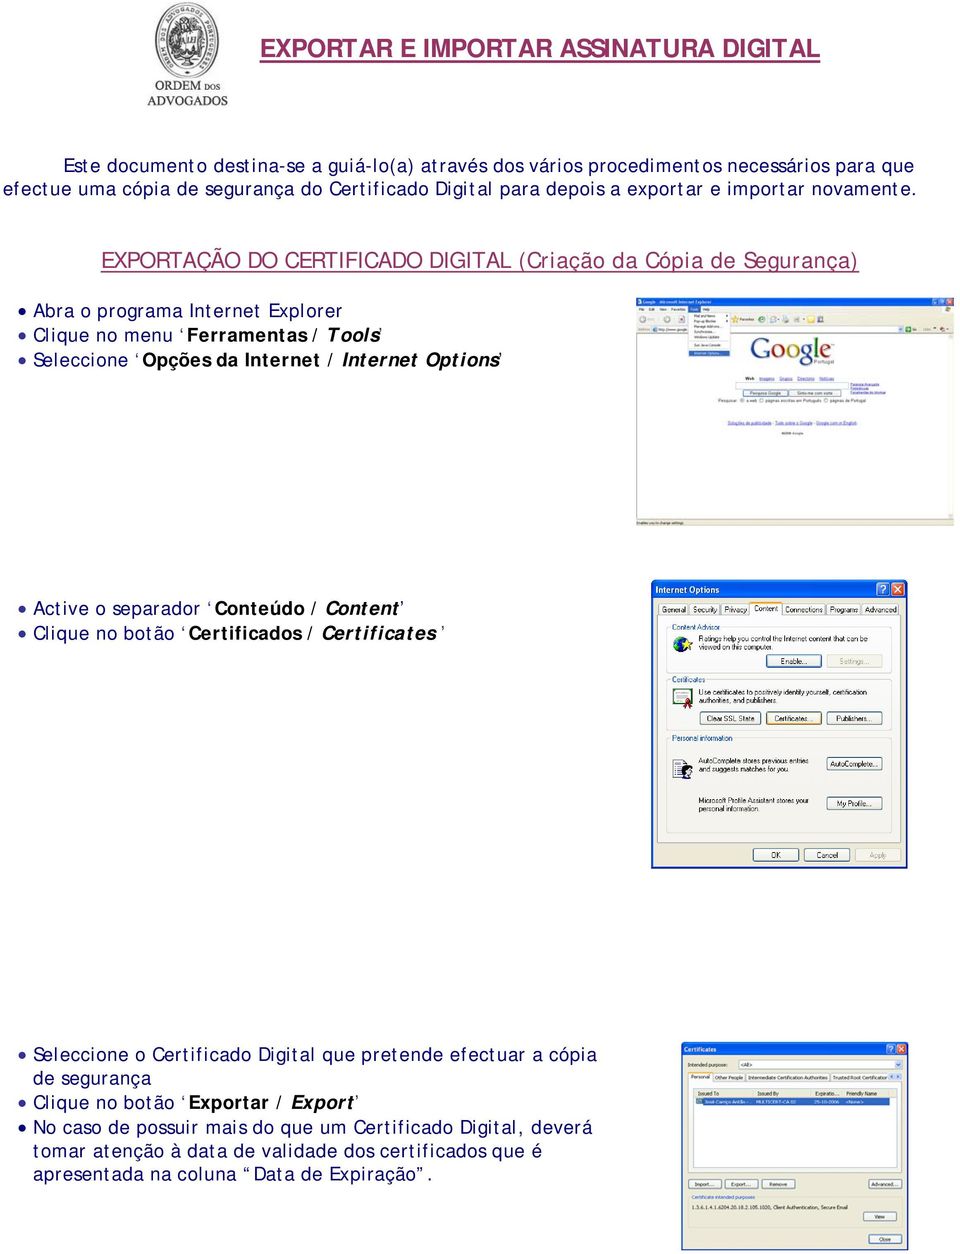 EXPORTAÇÃO DO CERTIFICADO DIGITAL (Criação da Cópia de Segurança) Abra o programa Internet Explorer Clique no menu Ferramentas / Tools Seleccione Opções da Internet / Internet Options Active